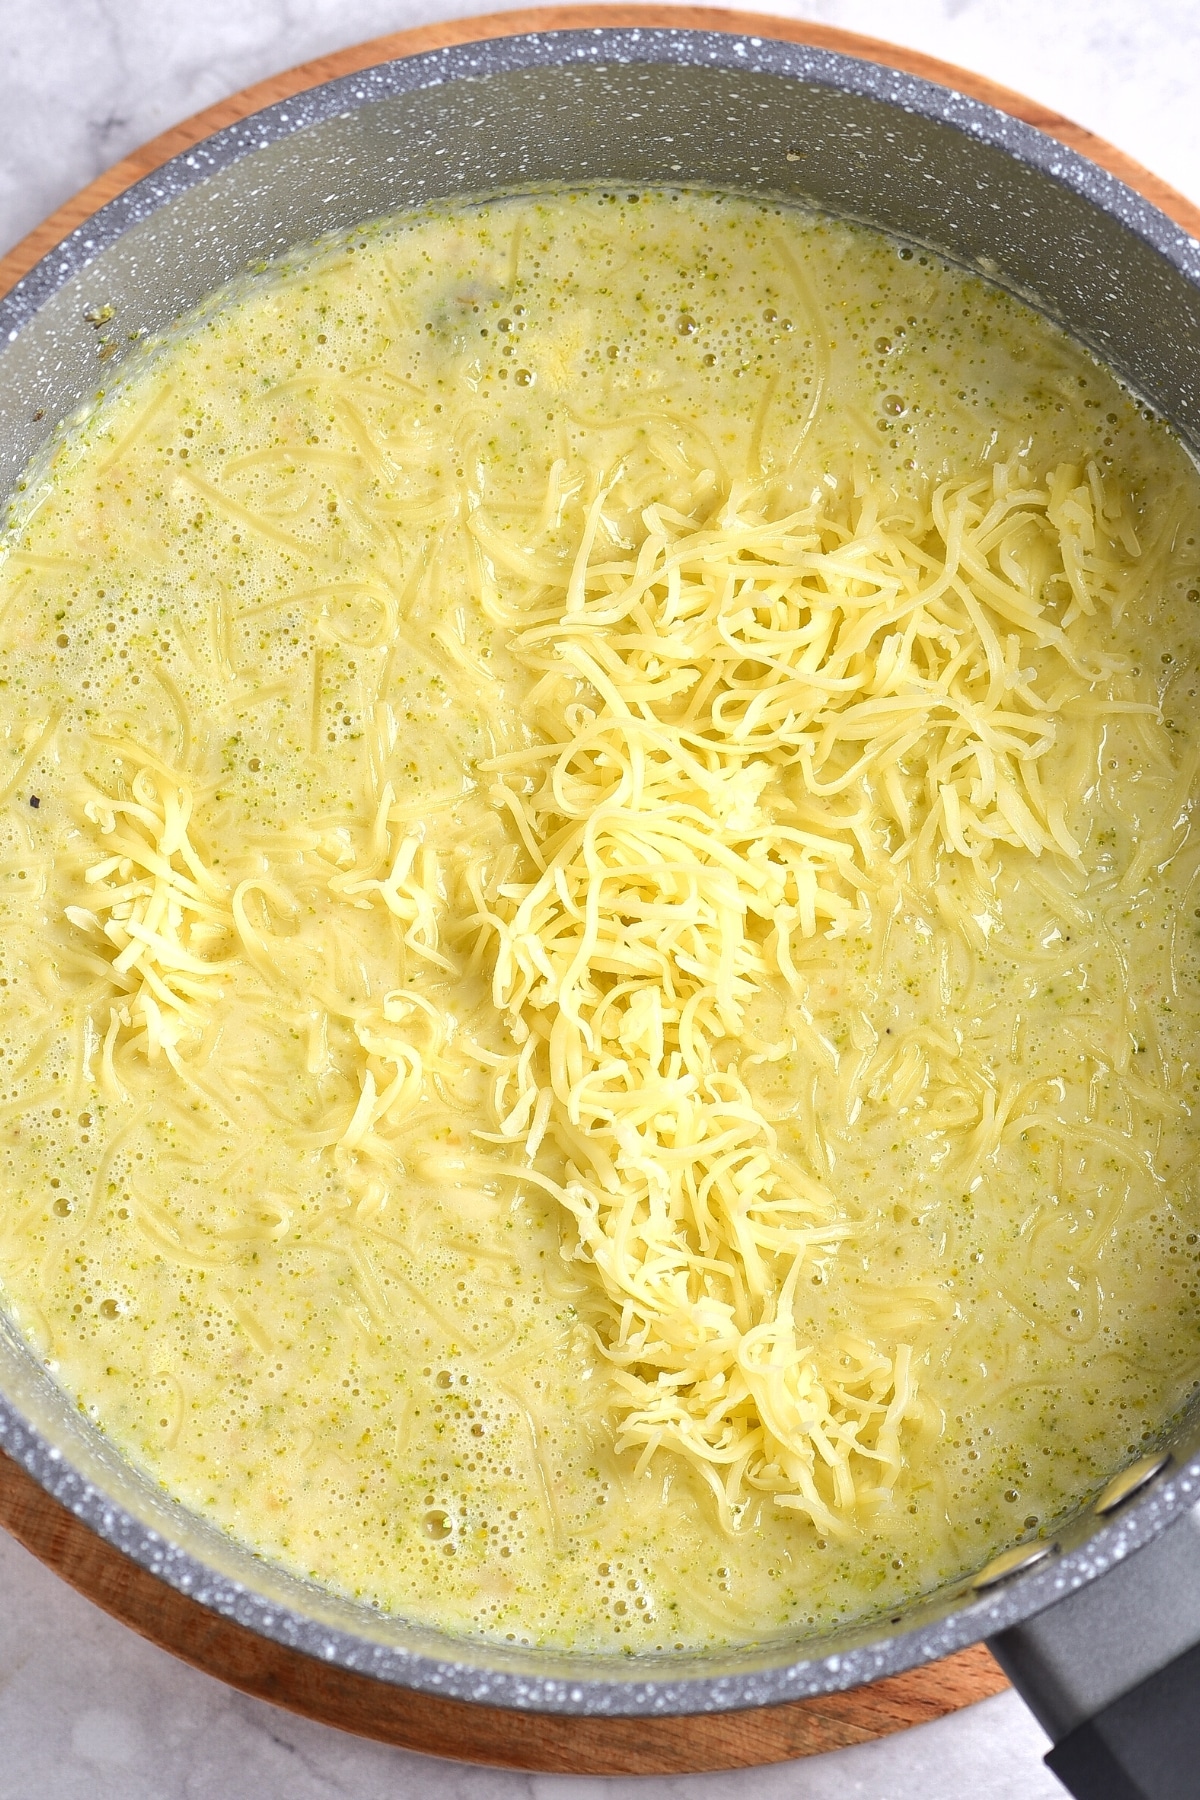 Shredded cheddar cheese in a pot of gf broccoli cheddar soup.